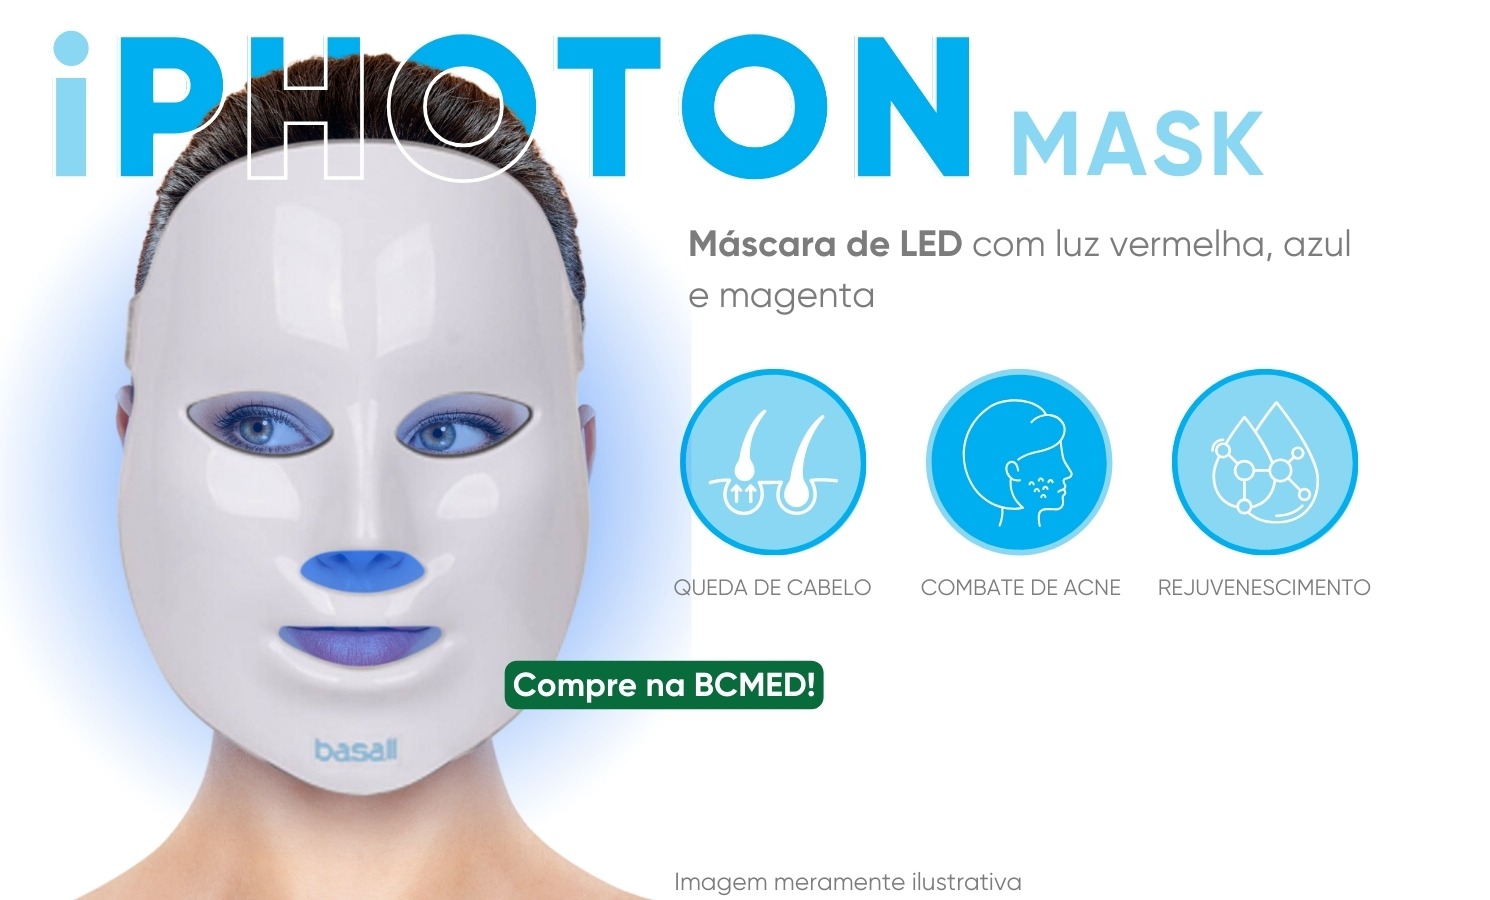 iphoton mask basall apresentação